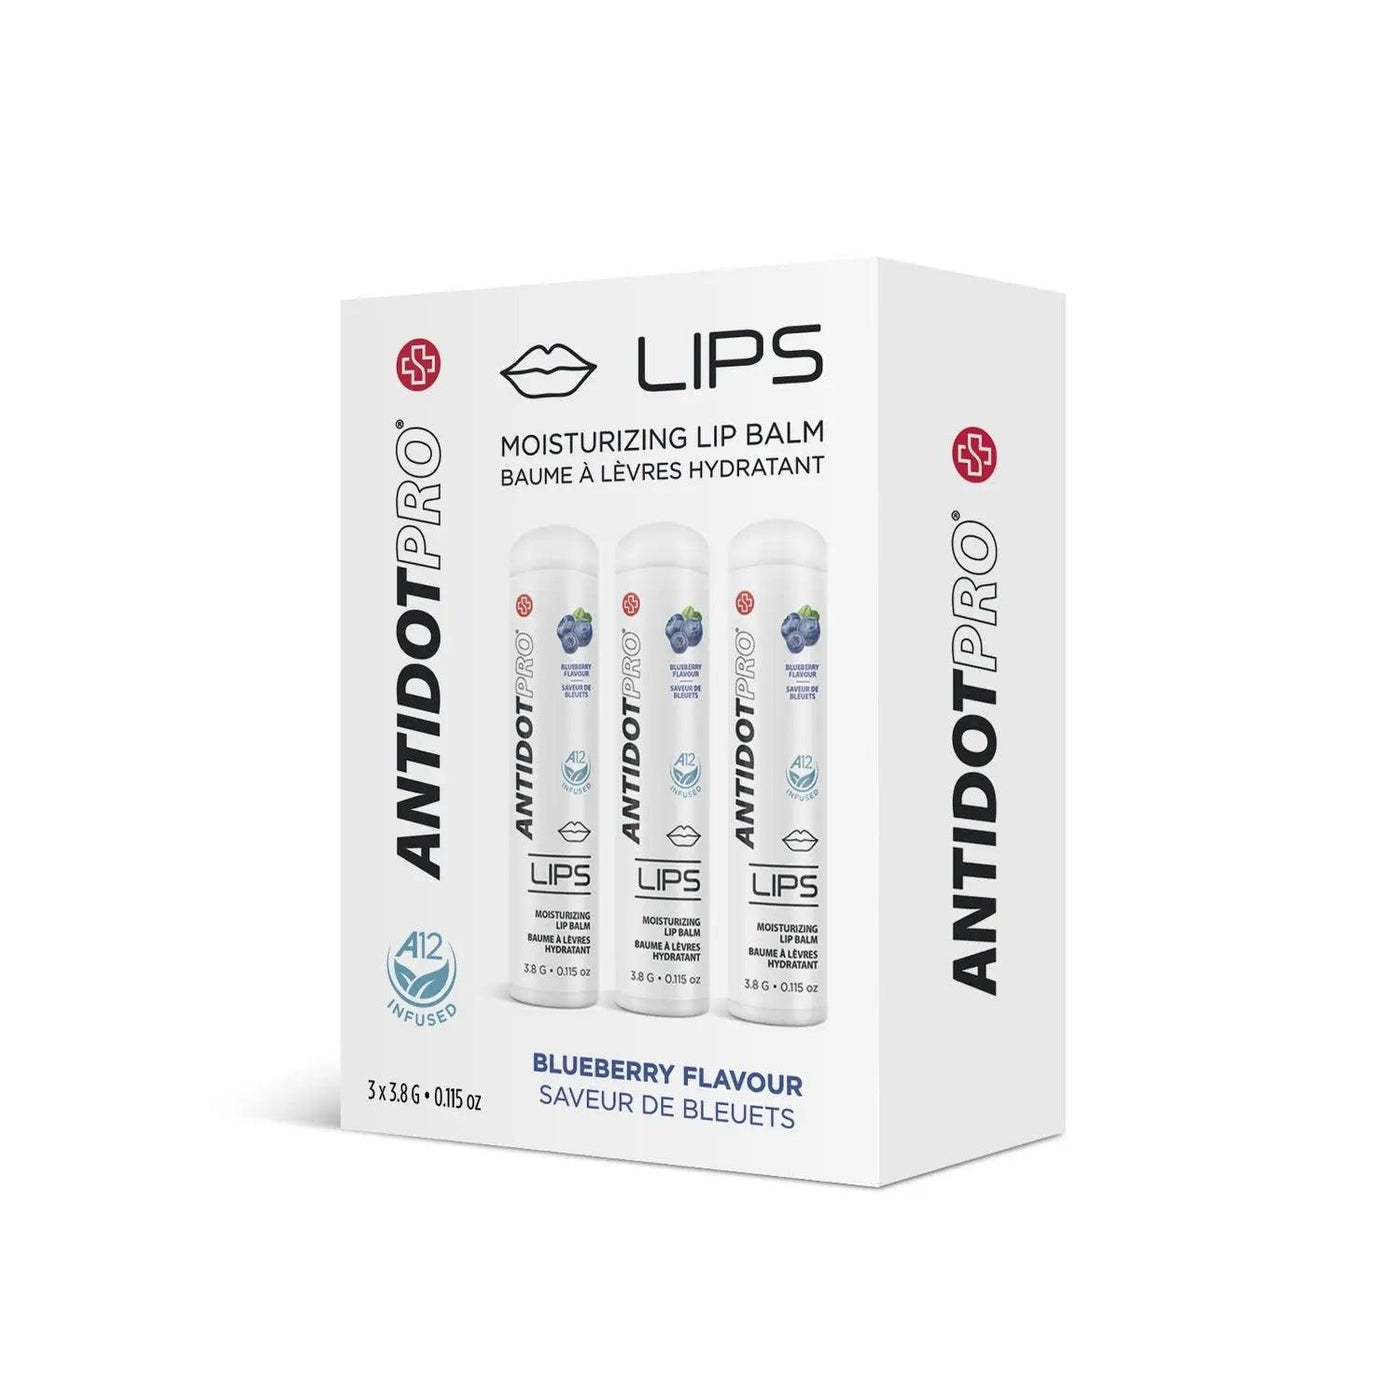 AntidotPro Lips (Blueberry) - 3 x 3.8G Antidotpro Boutique Deauville